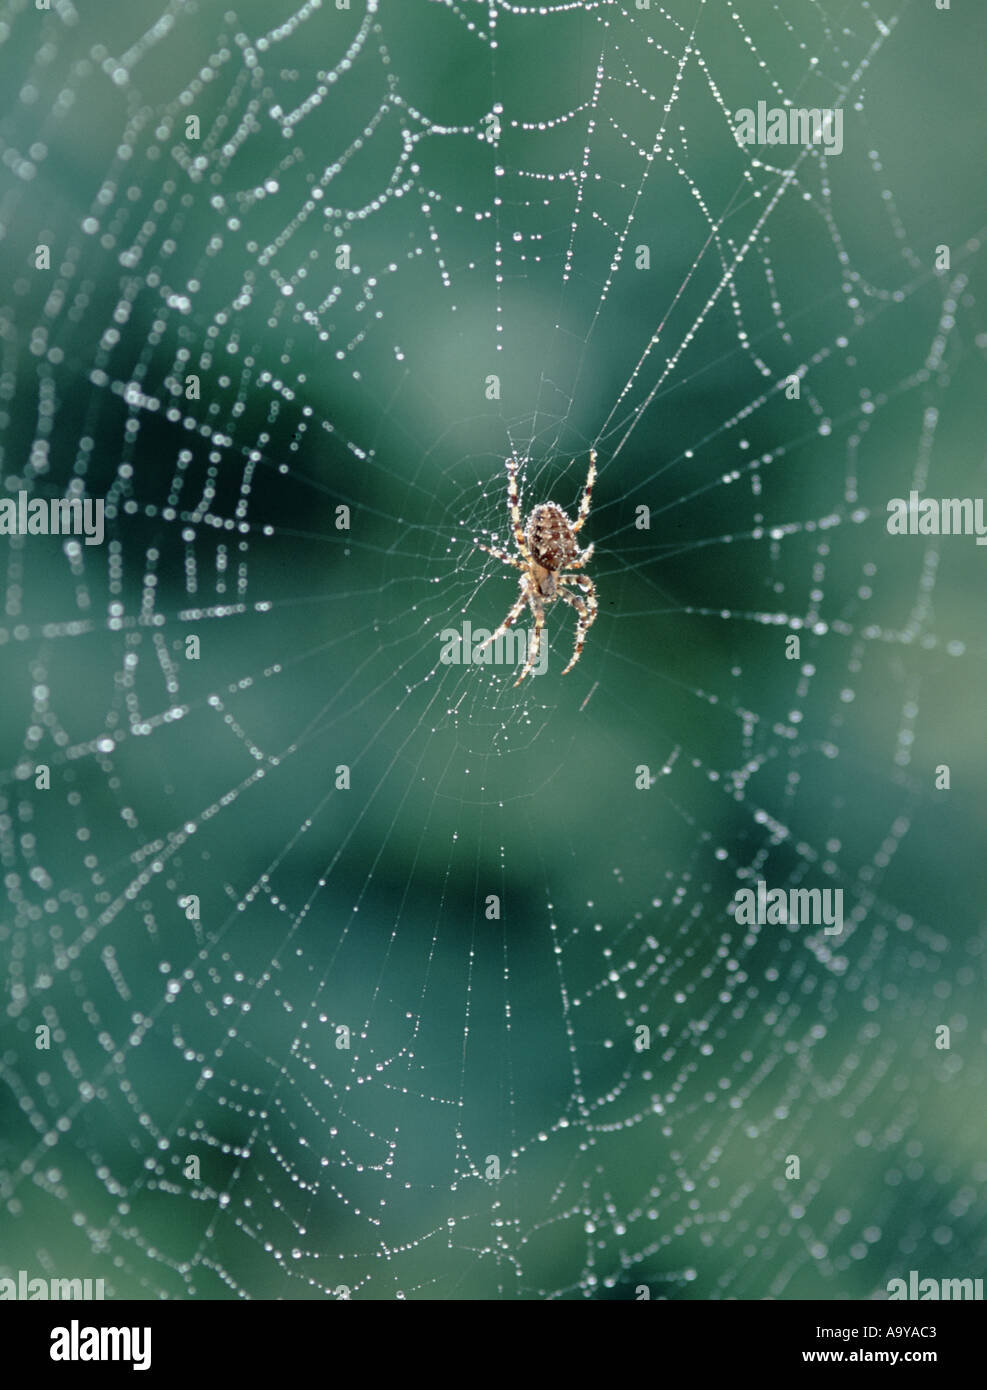 Une araignée Araneus diadematus jardin sur un site web Banque D'Images